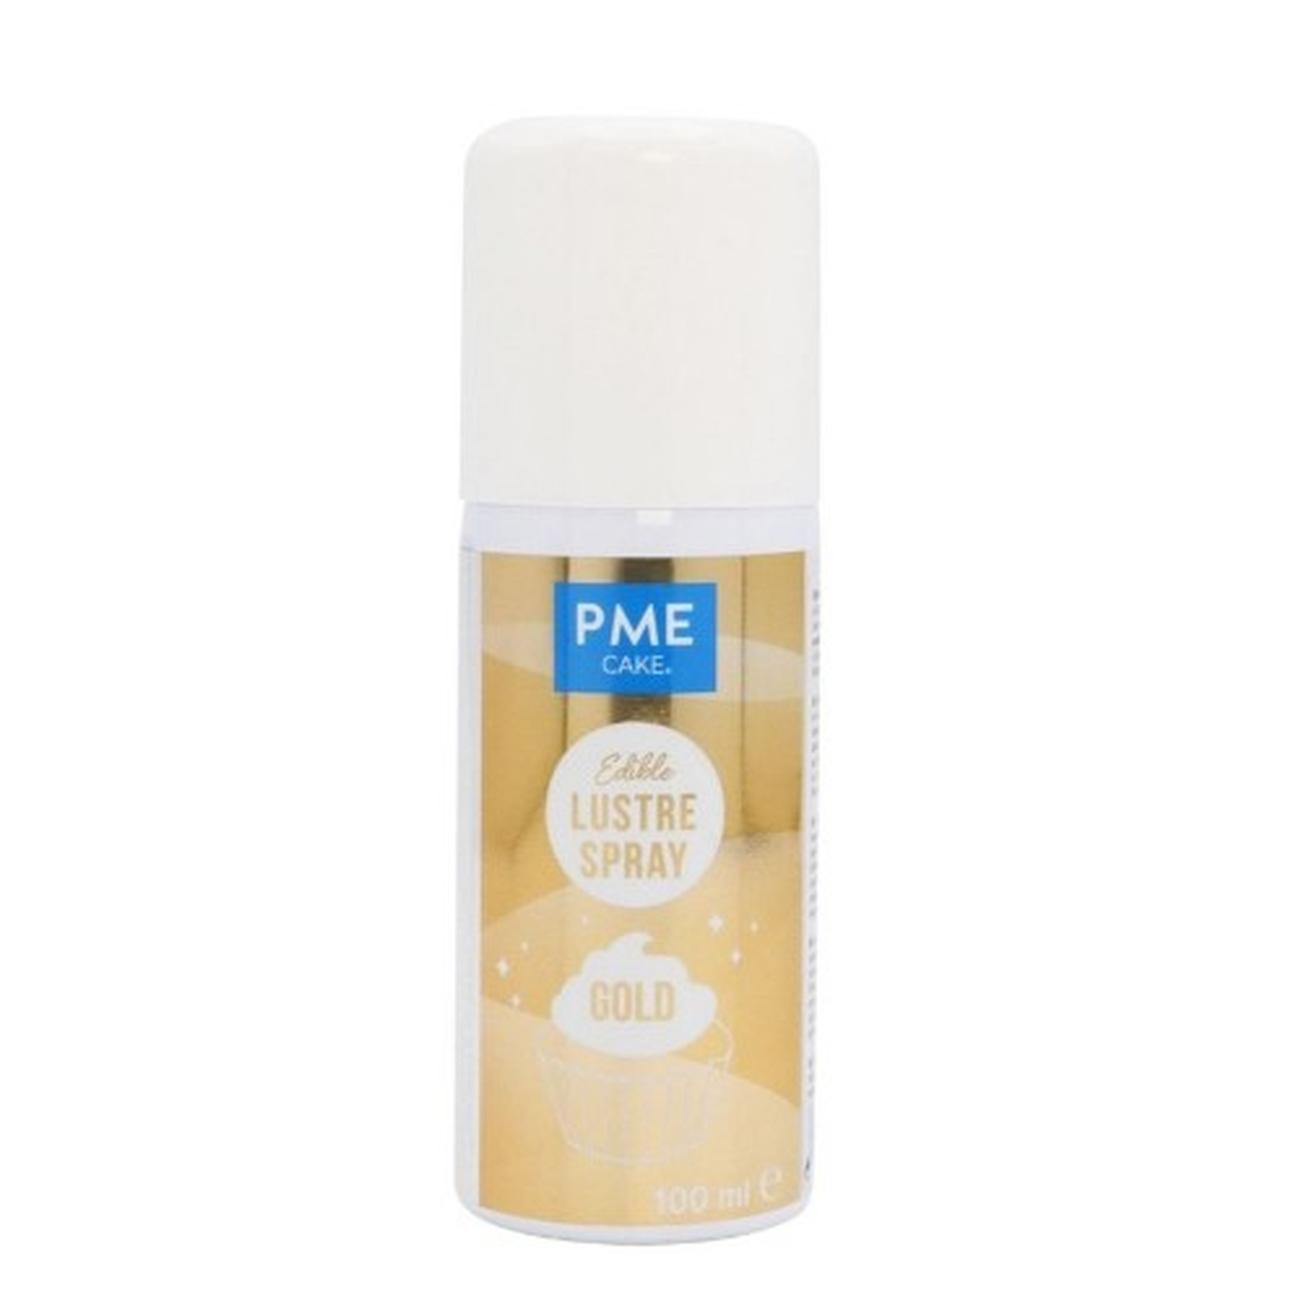 pme-edible-gold-lustre-spray-100ml - PME Edible Gold Lustre Spray 100ml